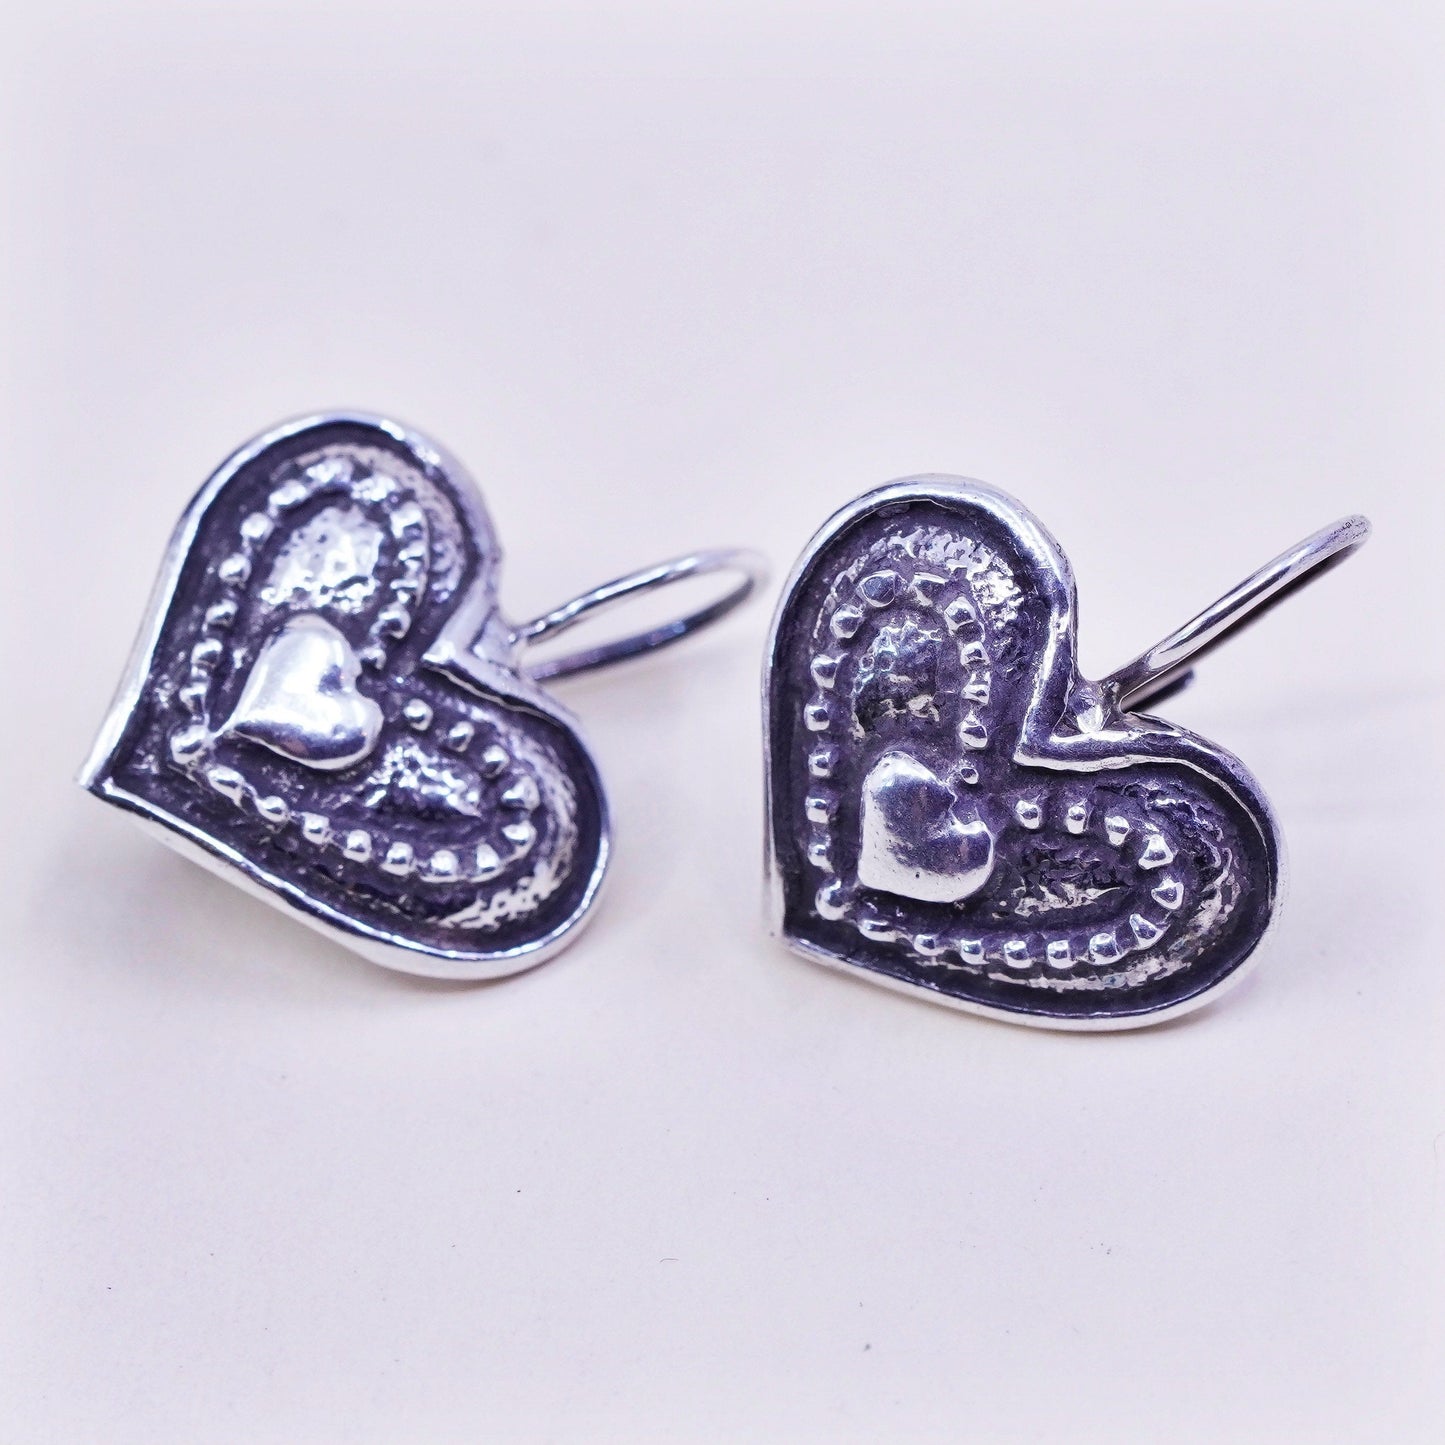 Vintage Israel Sterling silver handmade earrings, Israel 925 heart drops